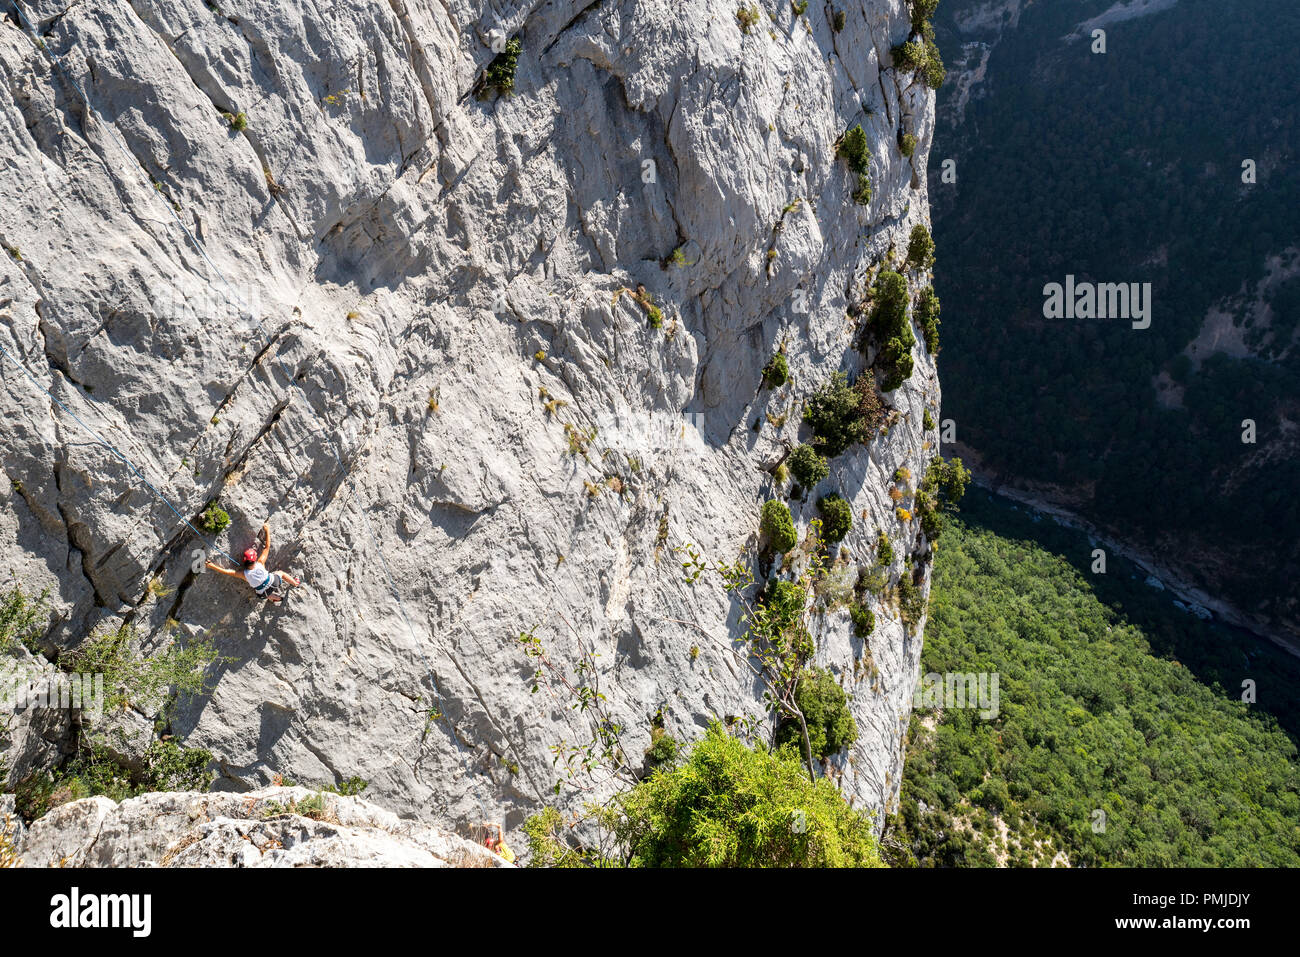 Rock climber climbing rock face dans les Gorges du Verdon / Gorges du Verdon canyon, Bouches-du-Rhône, Provence-Alpes-Côte d'Azur, France Banque D'Images